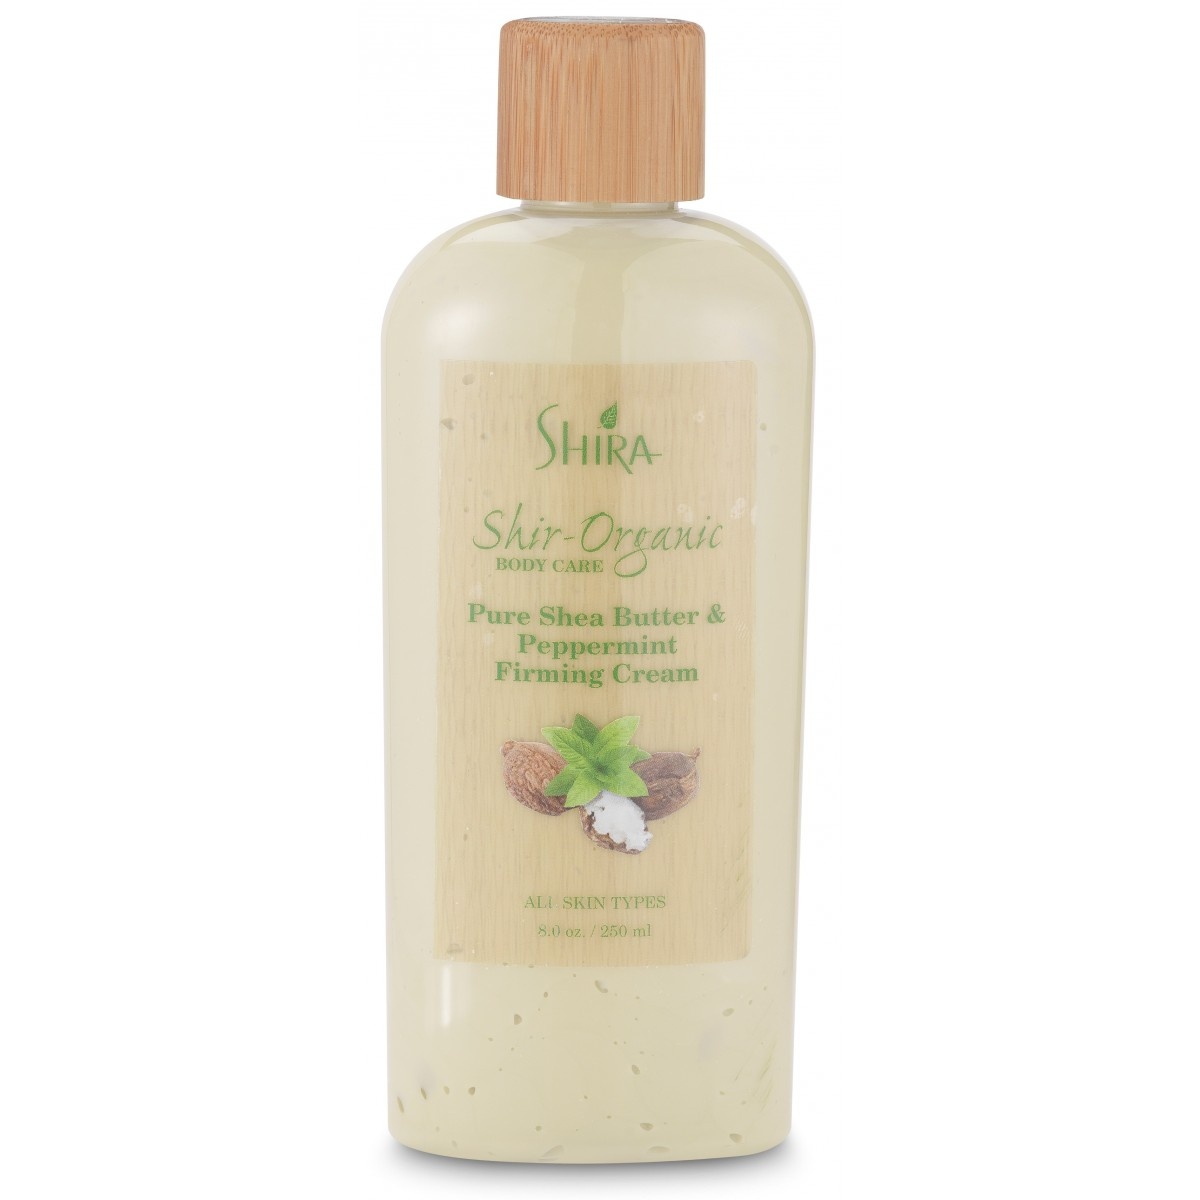 Shira Shir-Organic Pure Shea Butter & Peppermint Firming Cream